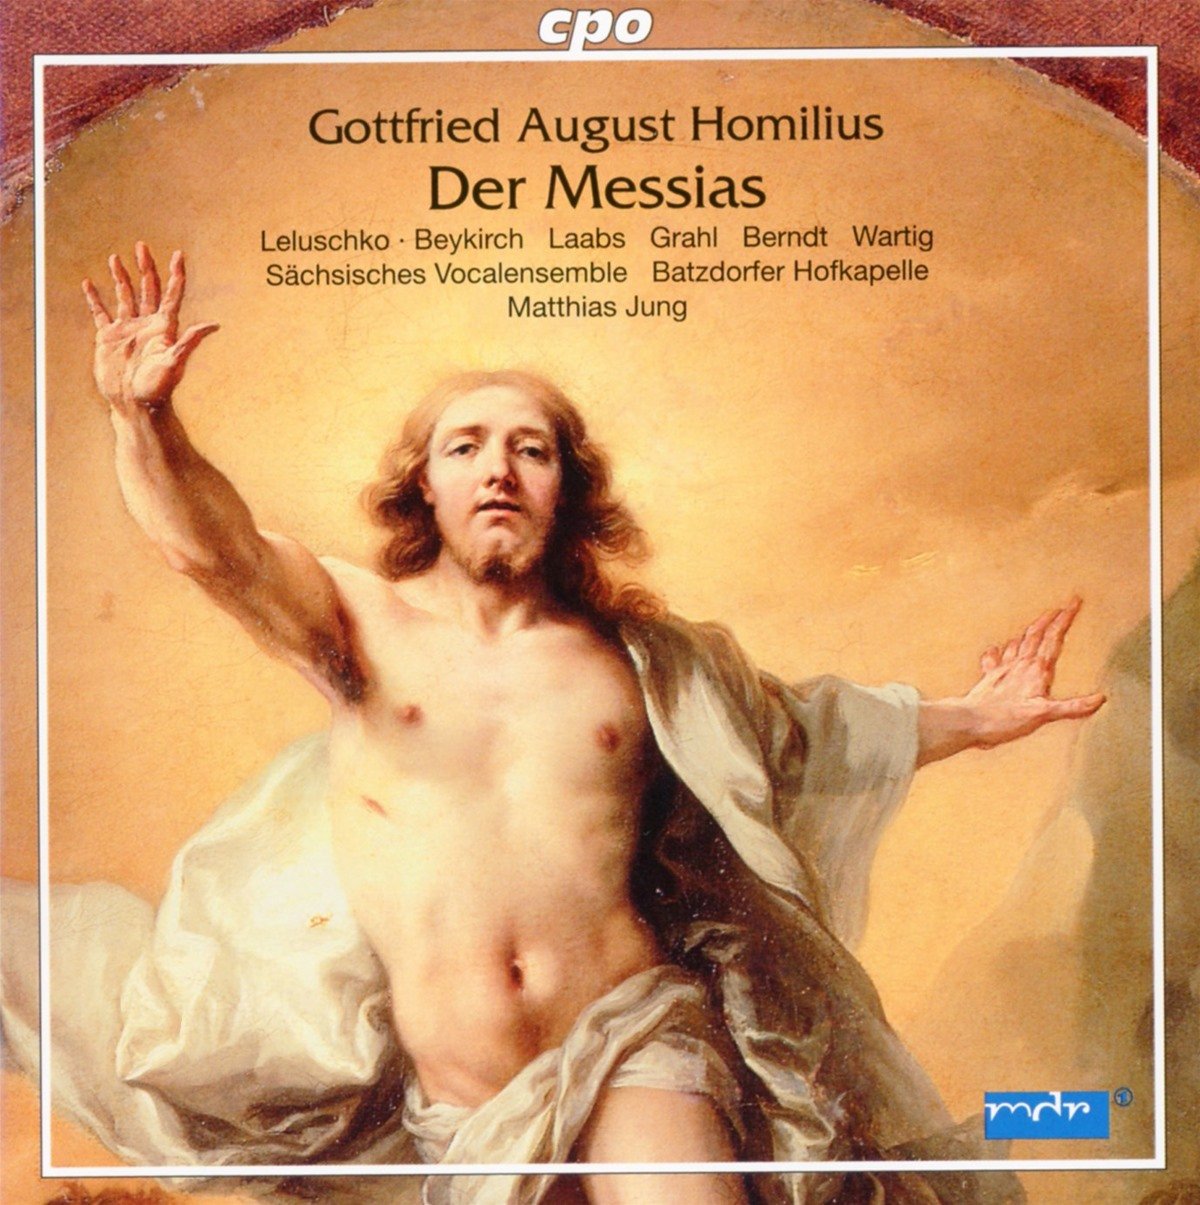 Audio Cd Gottfried August Homilius - Der Massias NUOVO SIGILLATO, EDIZIONE DEL 12/02/2016 SUBITO DISPONIBILE